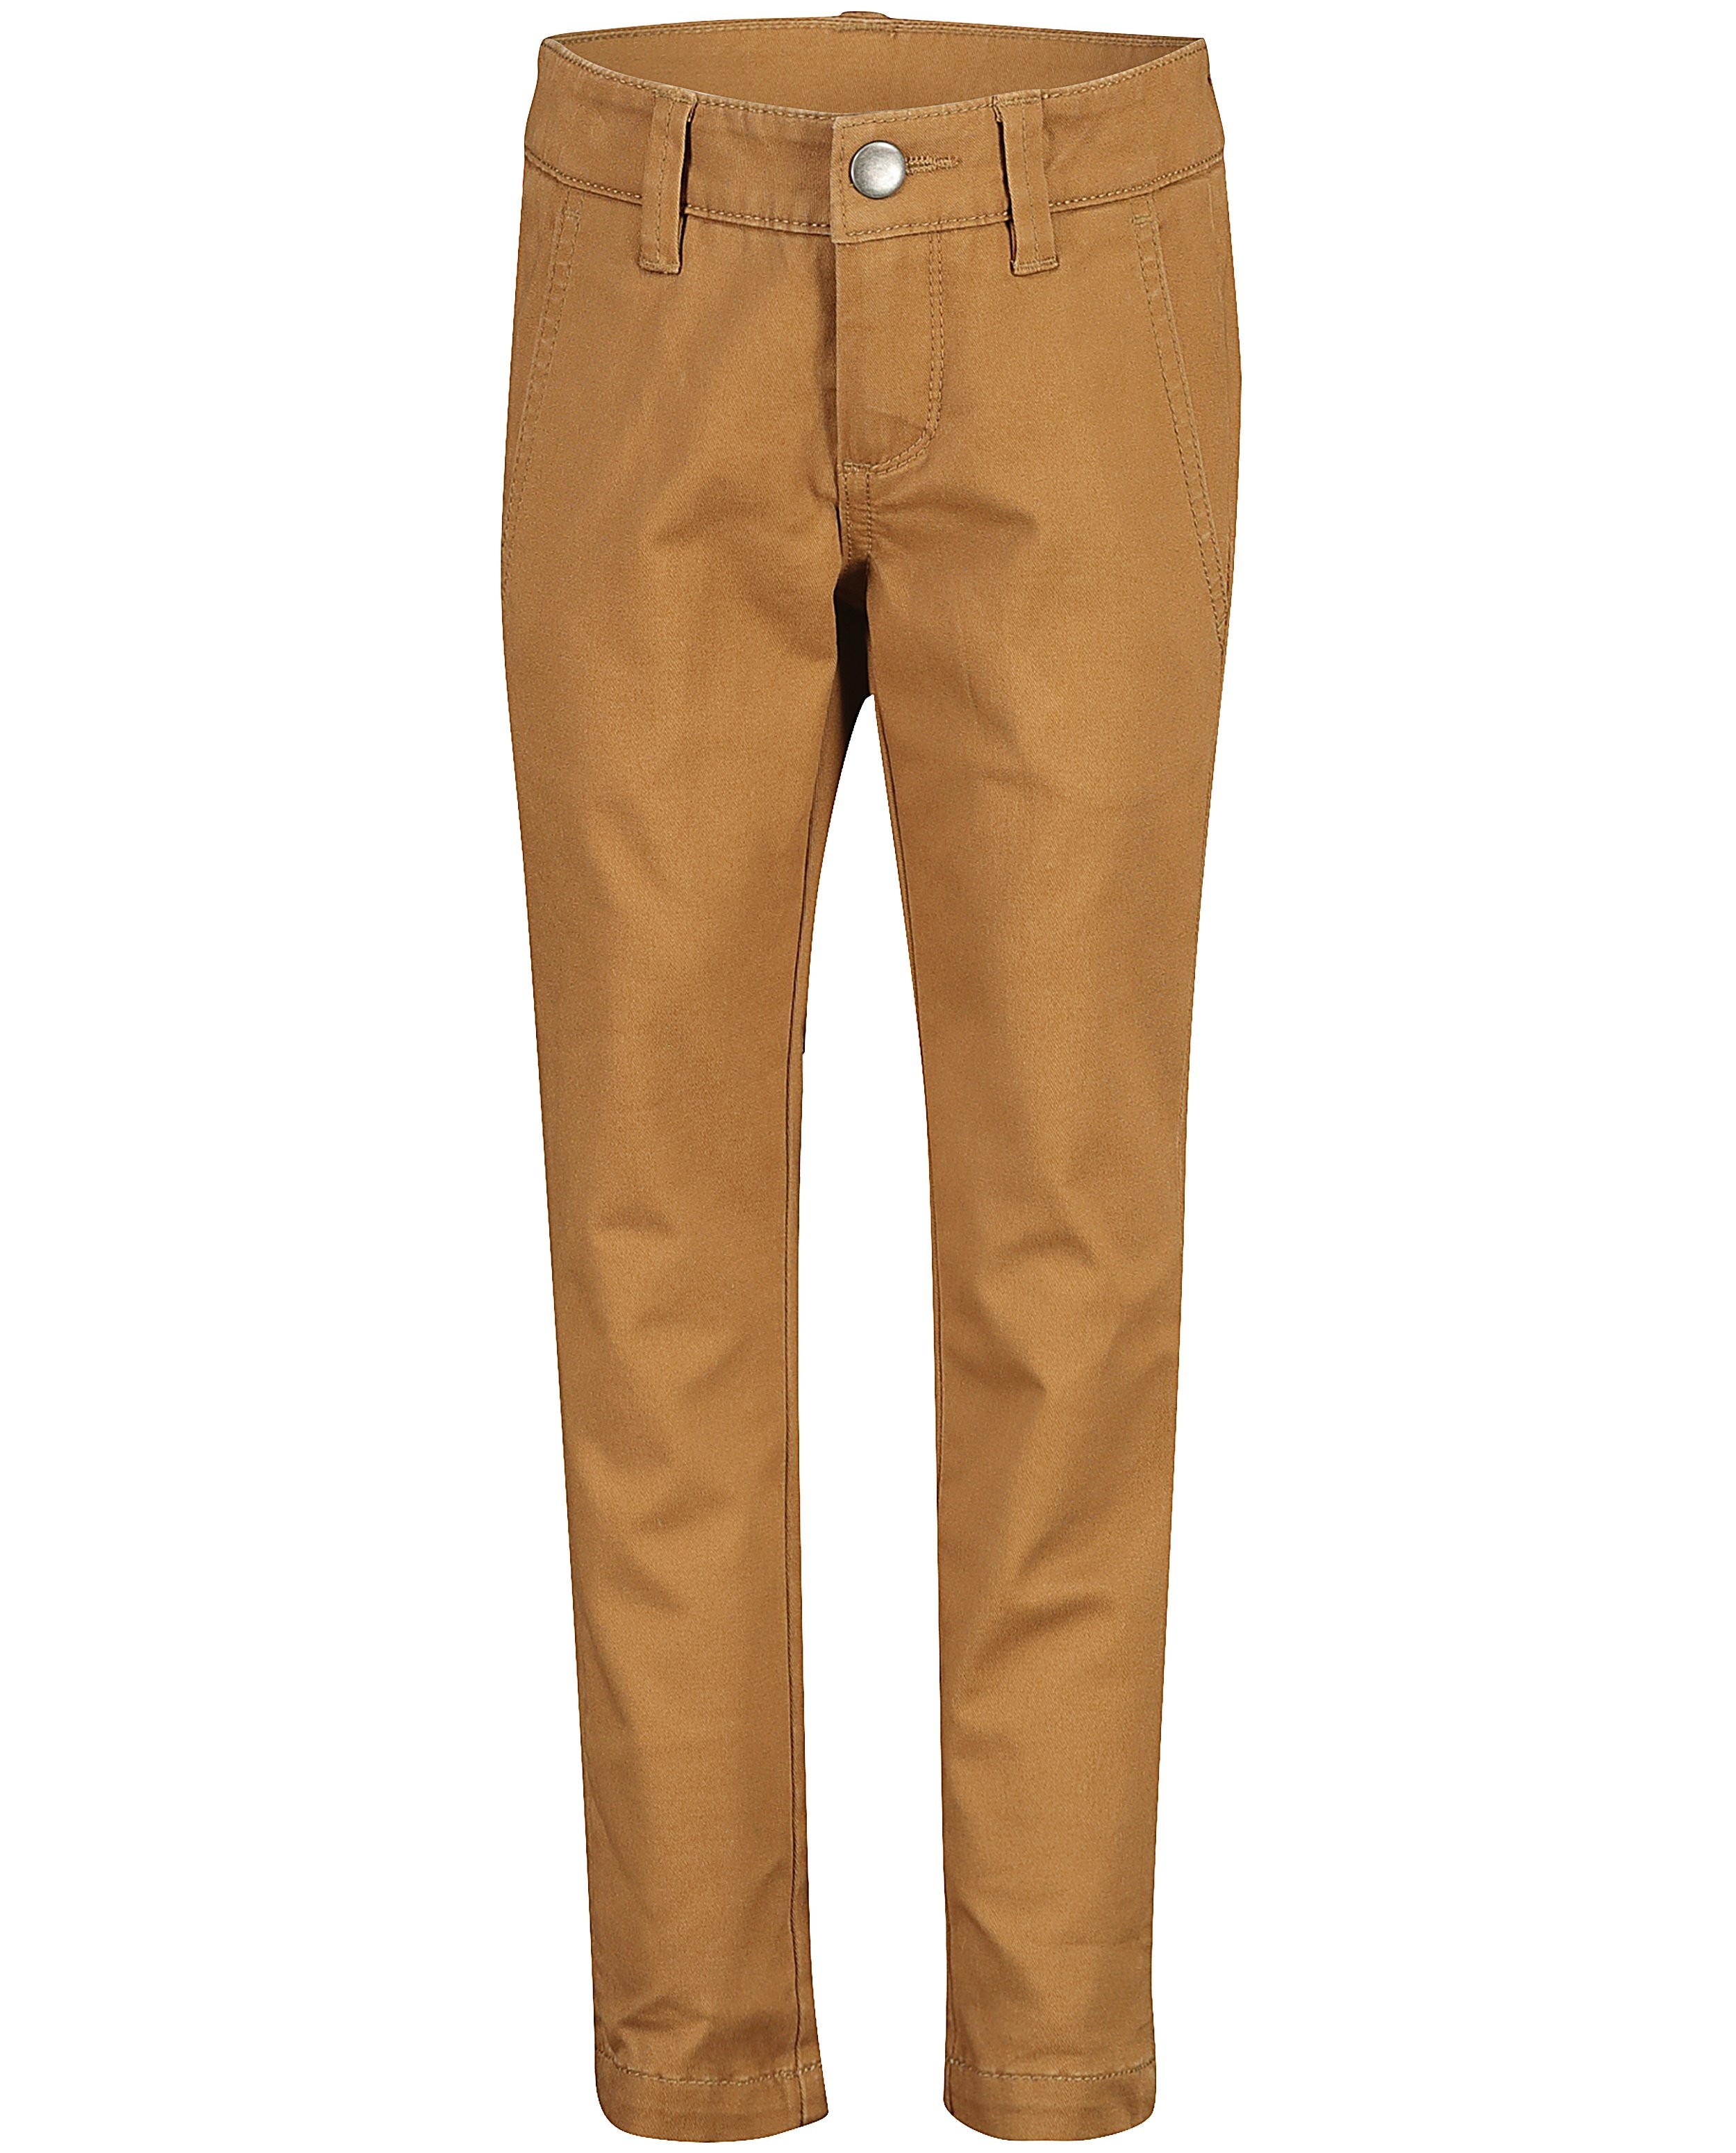 Pantalons - Skinny brun clair